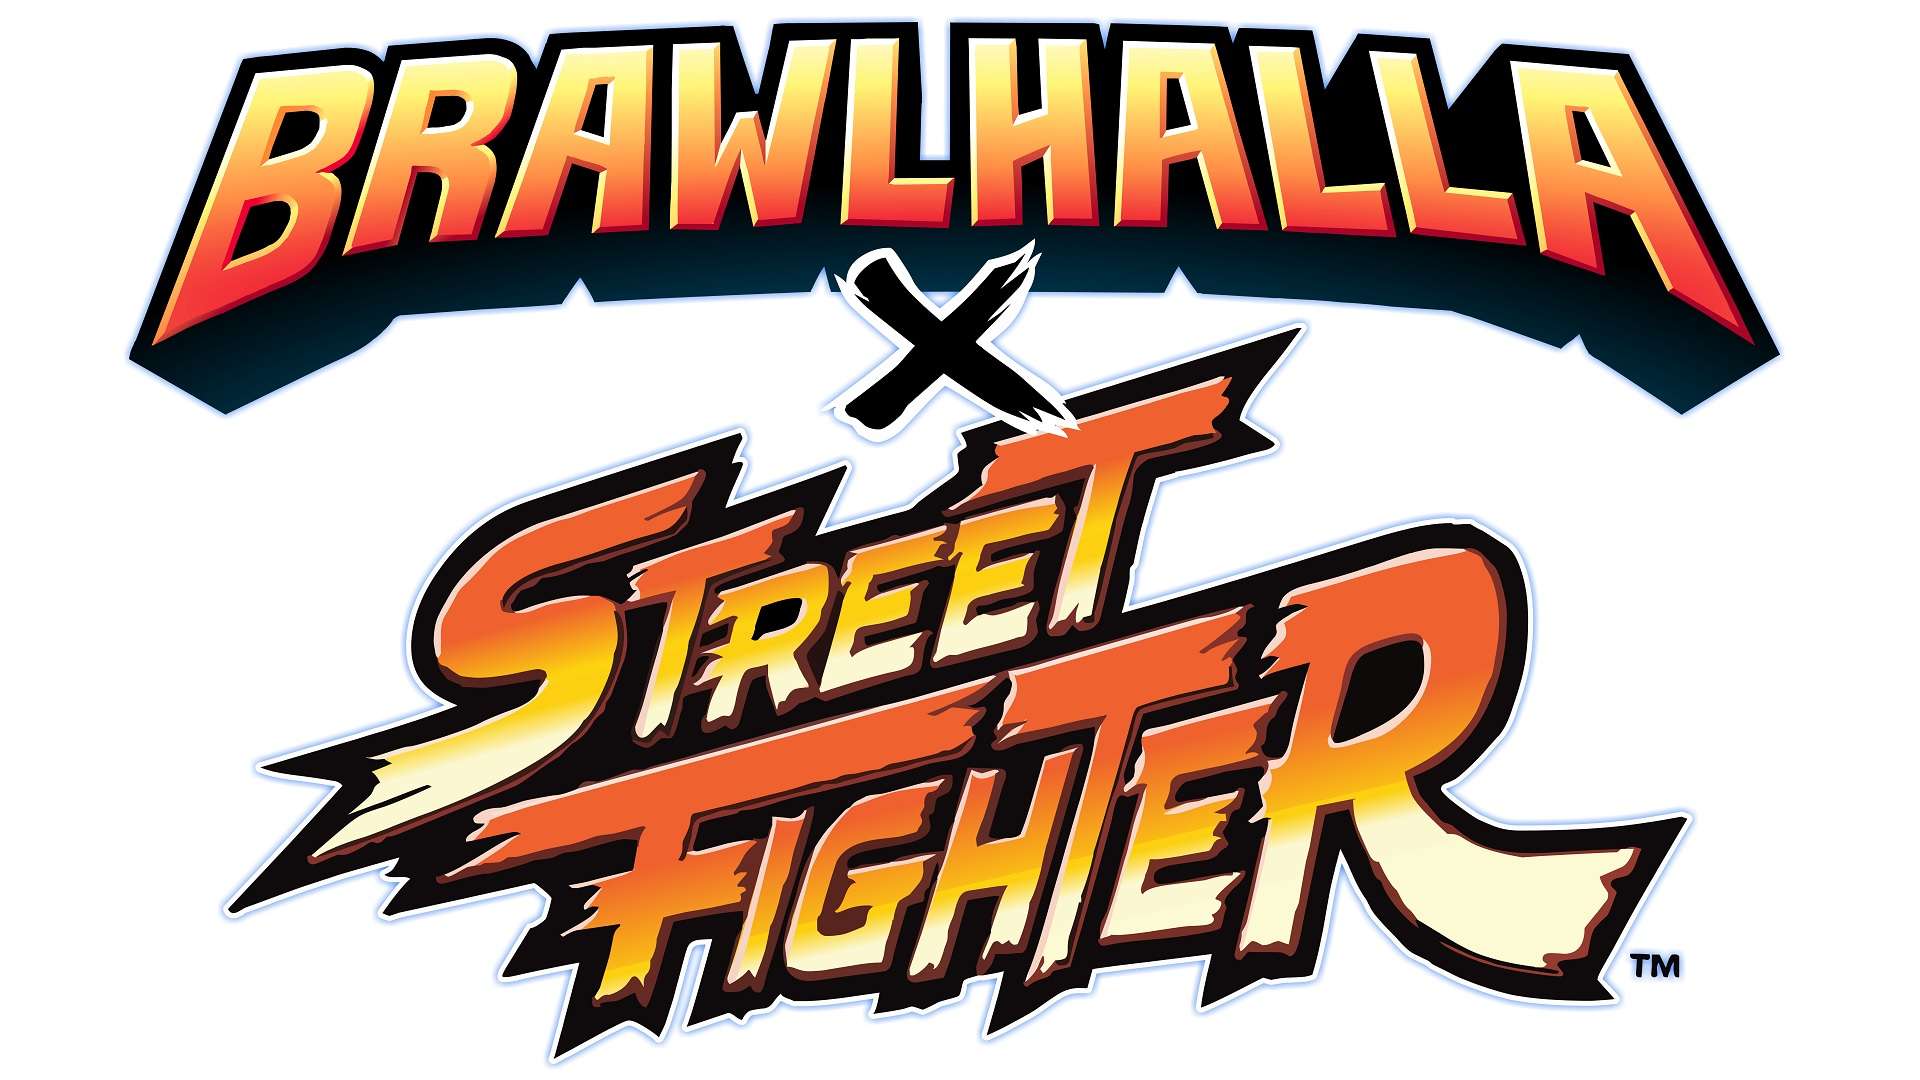 Brawhalla Street Fighter